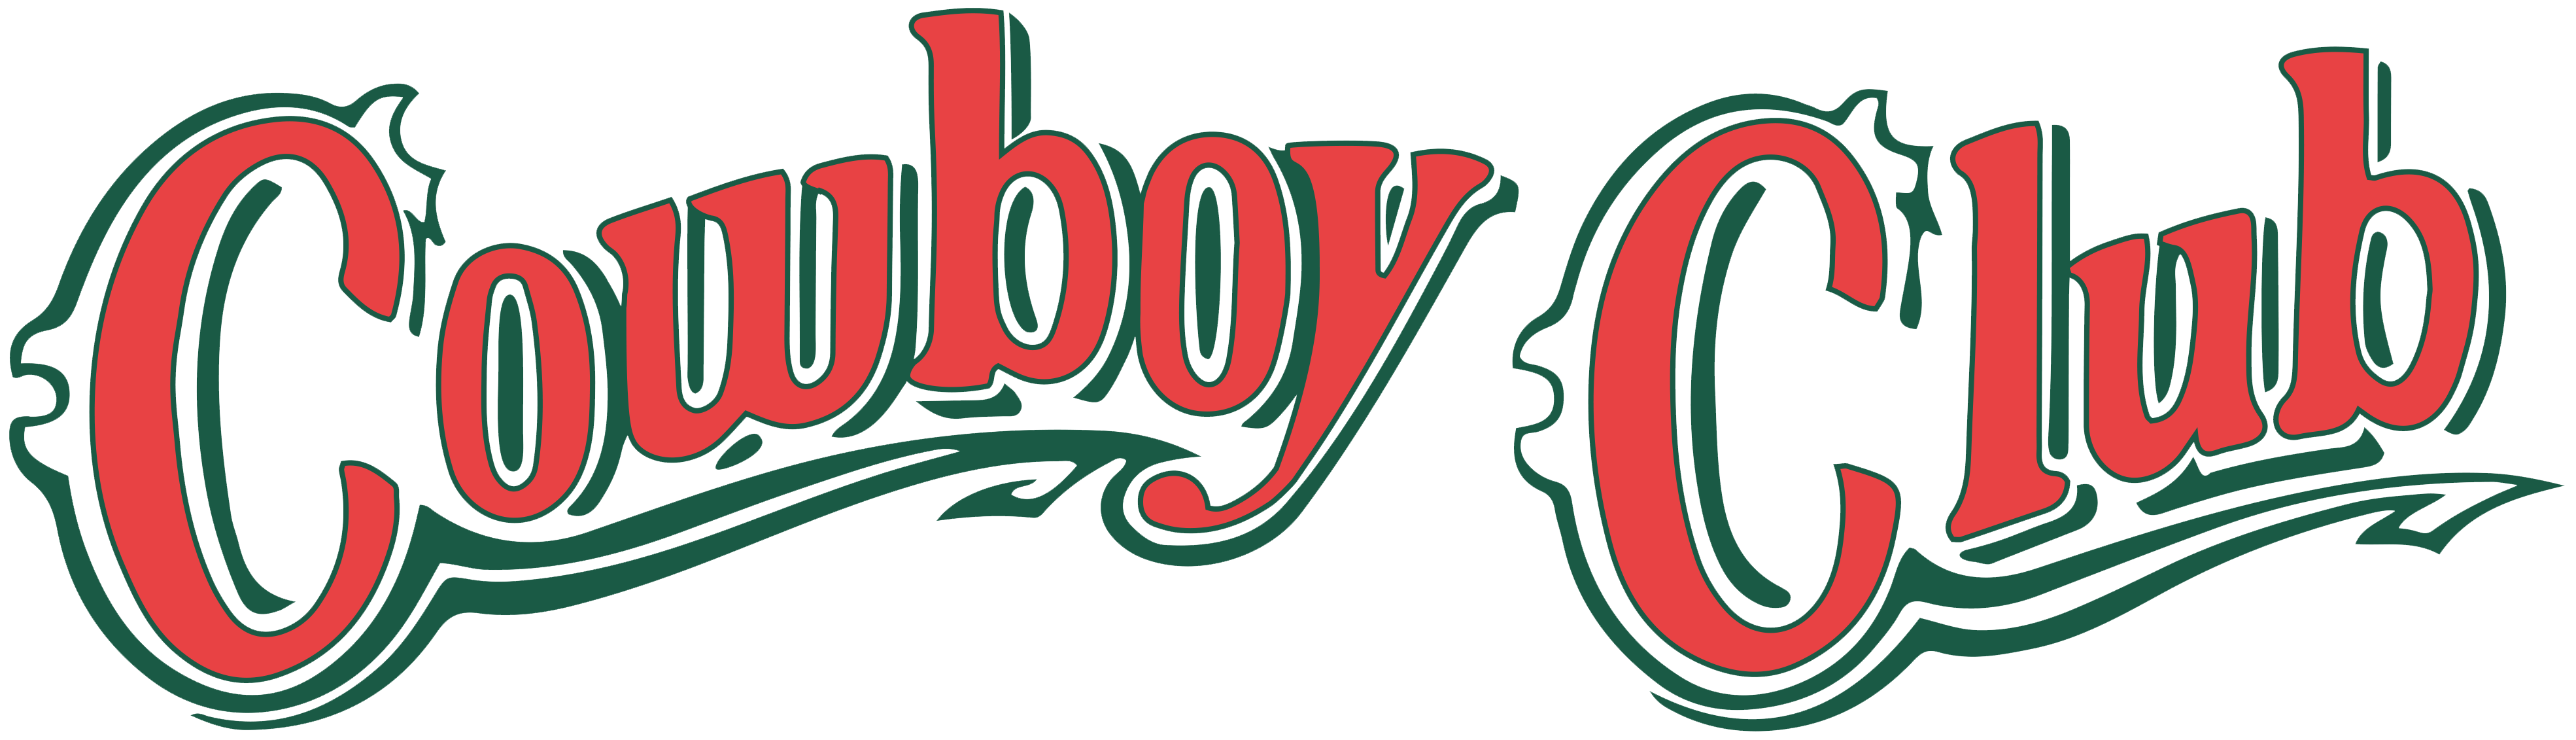 Cowboy Logo GRATUIt PNG image